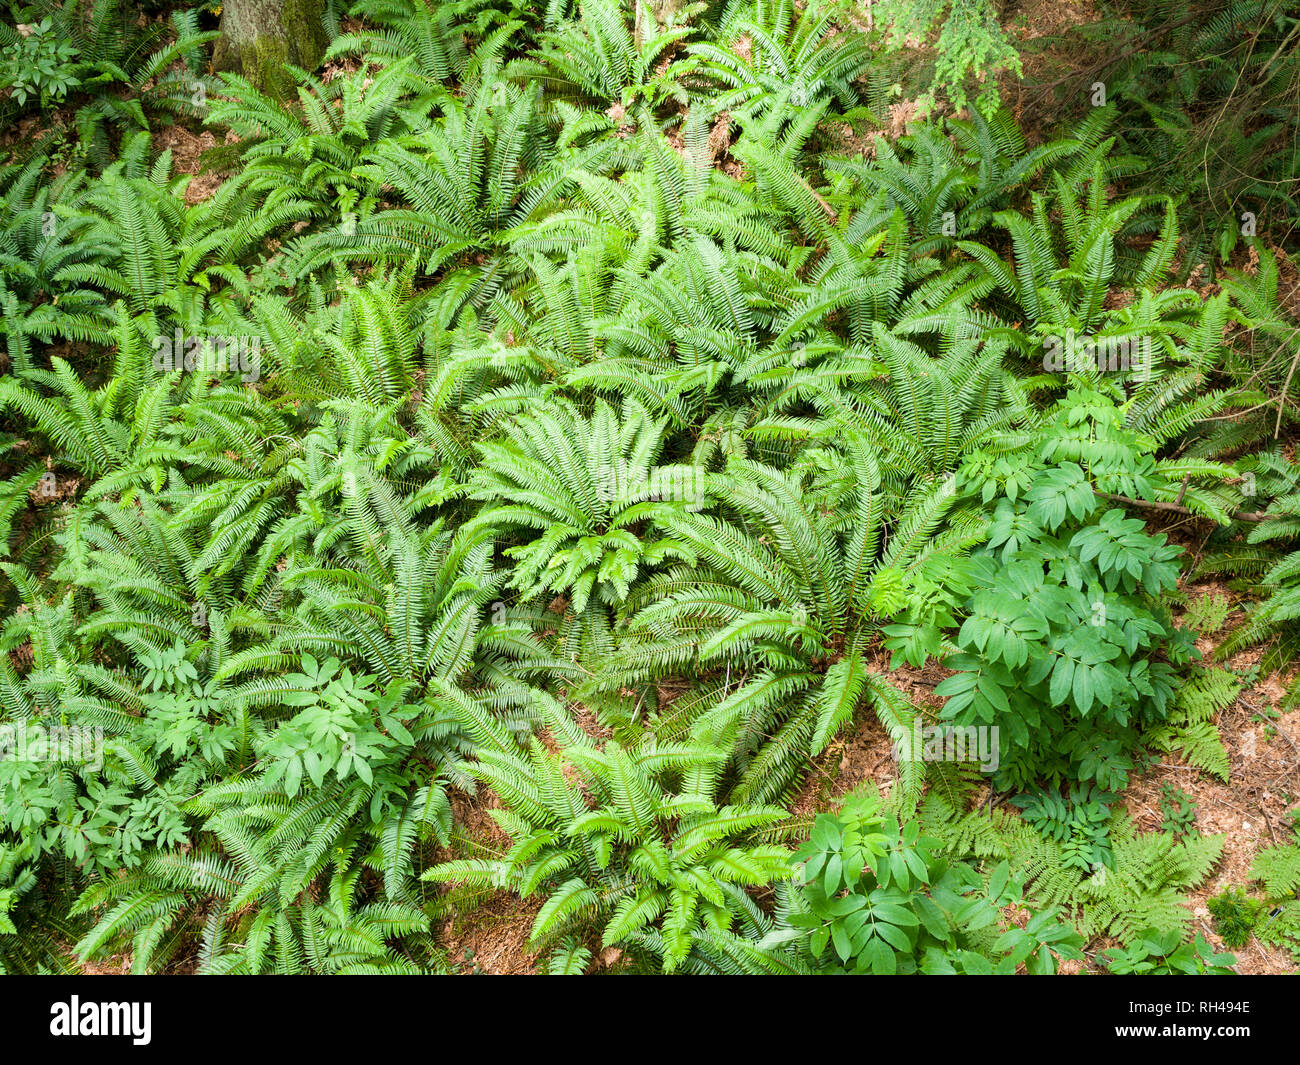 Waldboden Farne von Oben: ein Cluster von hellen grünen Farnen und anderen Unterwuchs Pflanzen in einem gemäßigten Regenwald an der Küste. Stockfoto